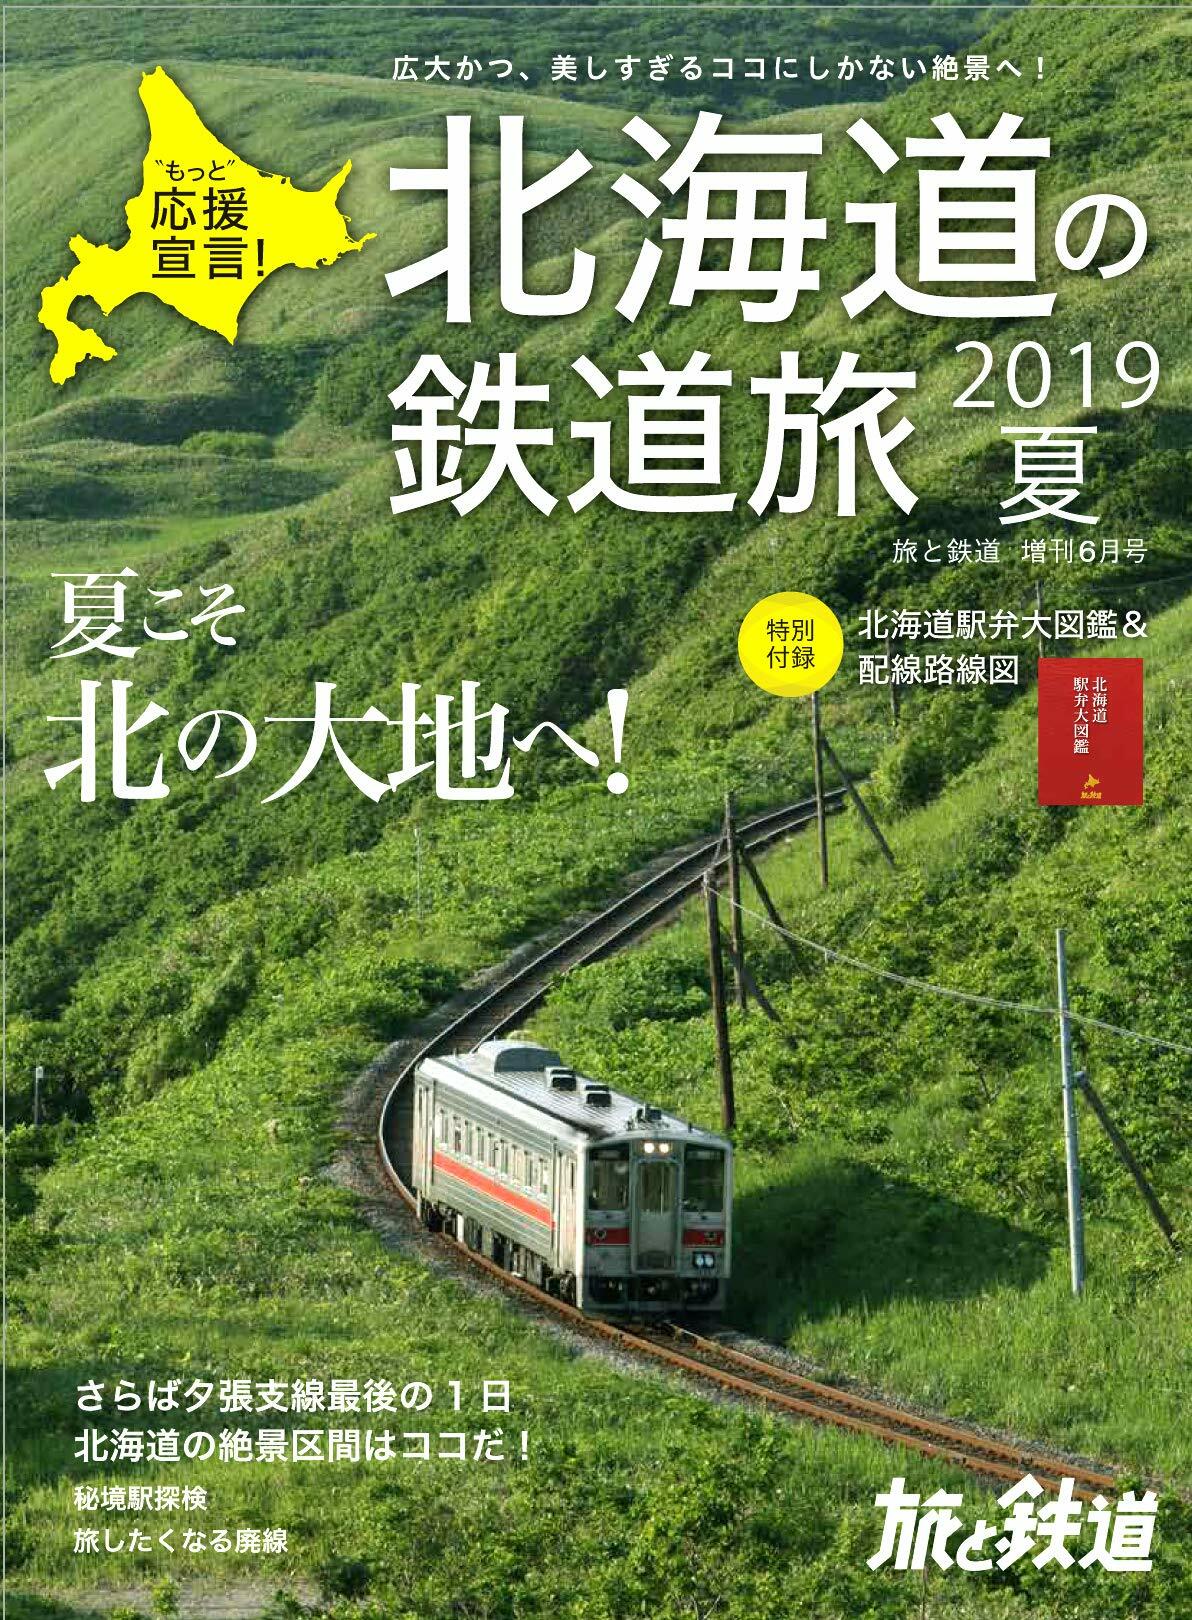 旅と鐵道 2019年 6月增刊號 北海道の鐵道旅 2019夏